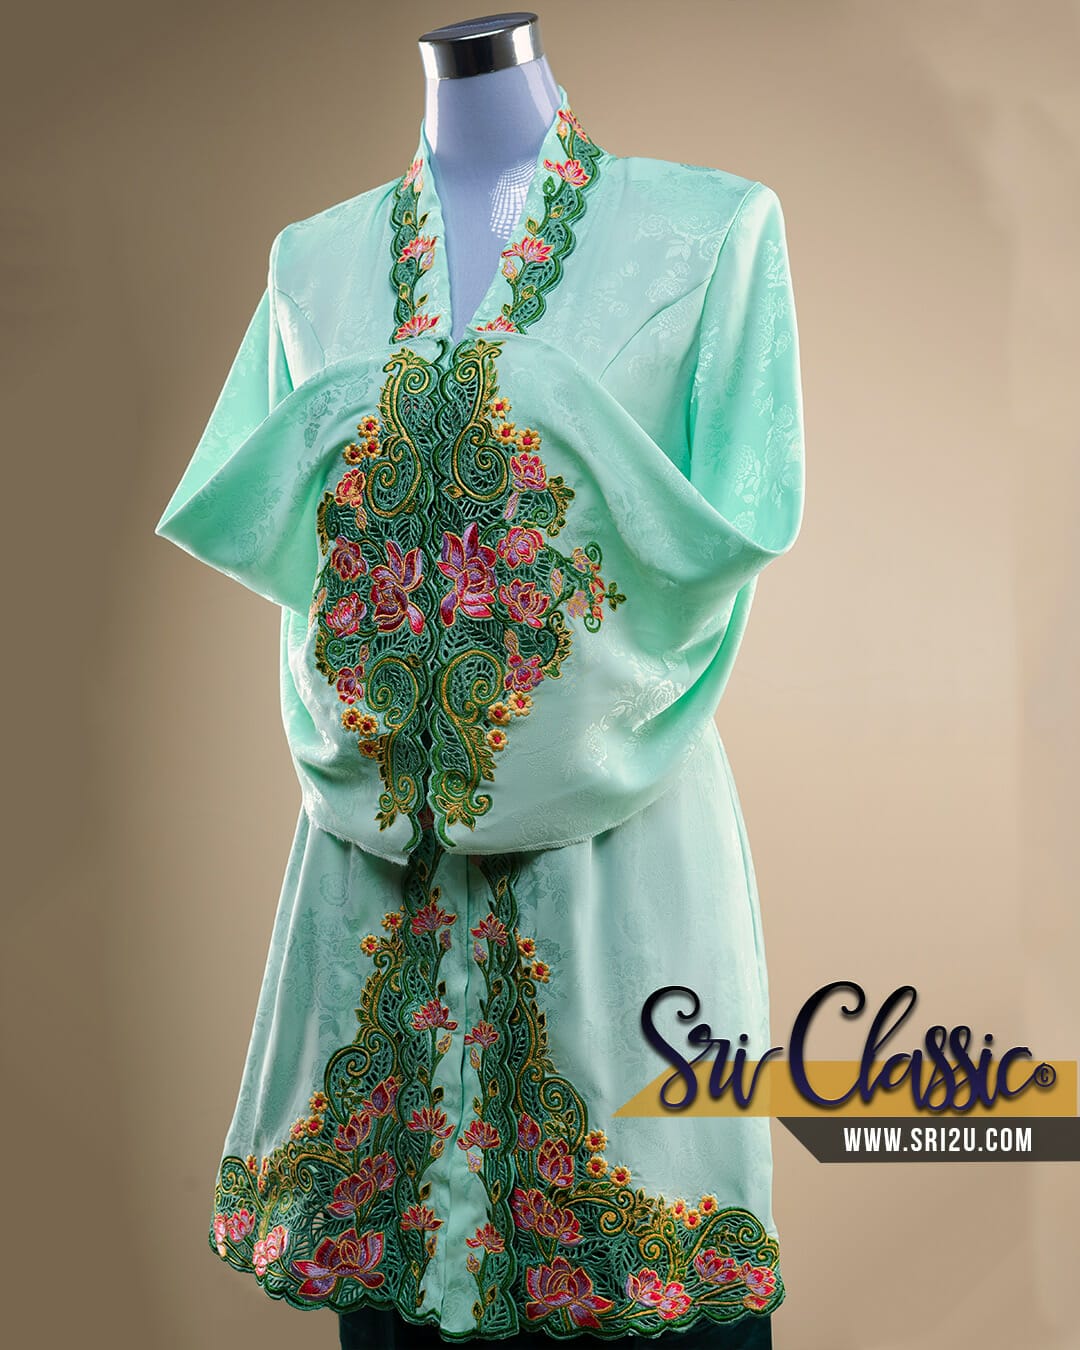 Baju Kebaya Tradisi Bersulam Kerawang Motif Bunga Cempaka dan Bunga Tanjong